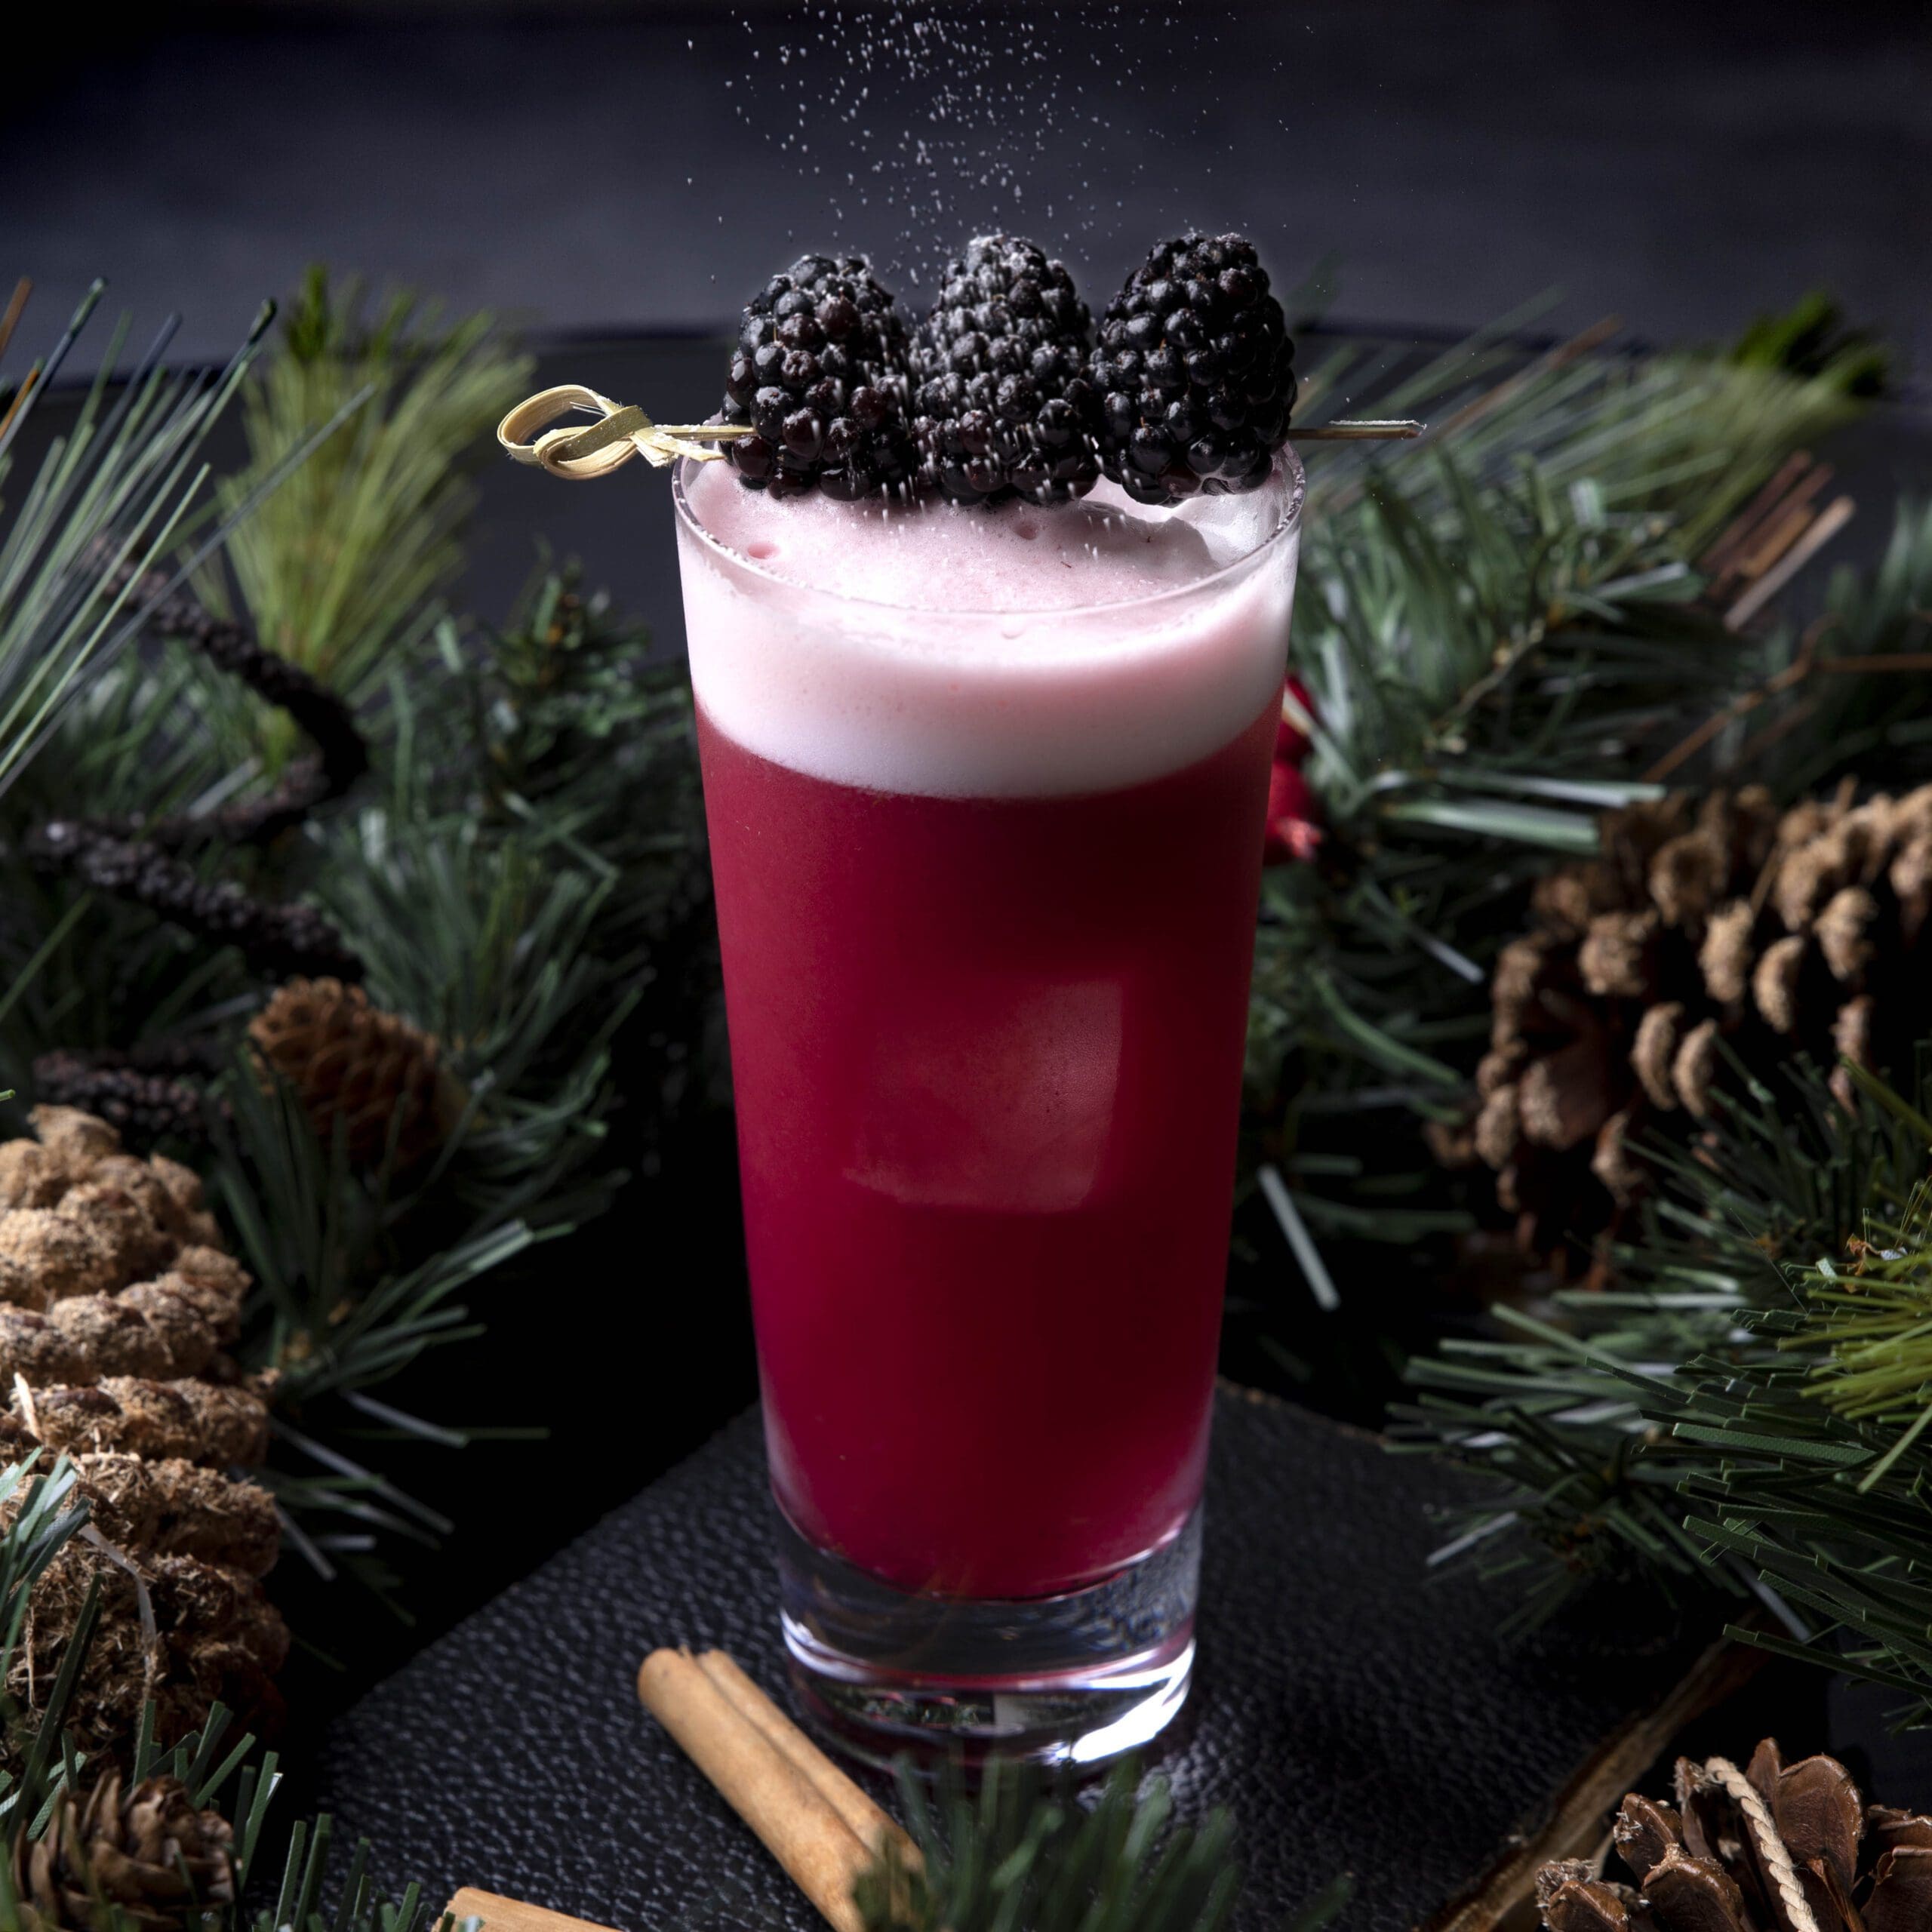 Christmas Cocktail